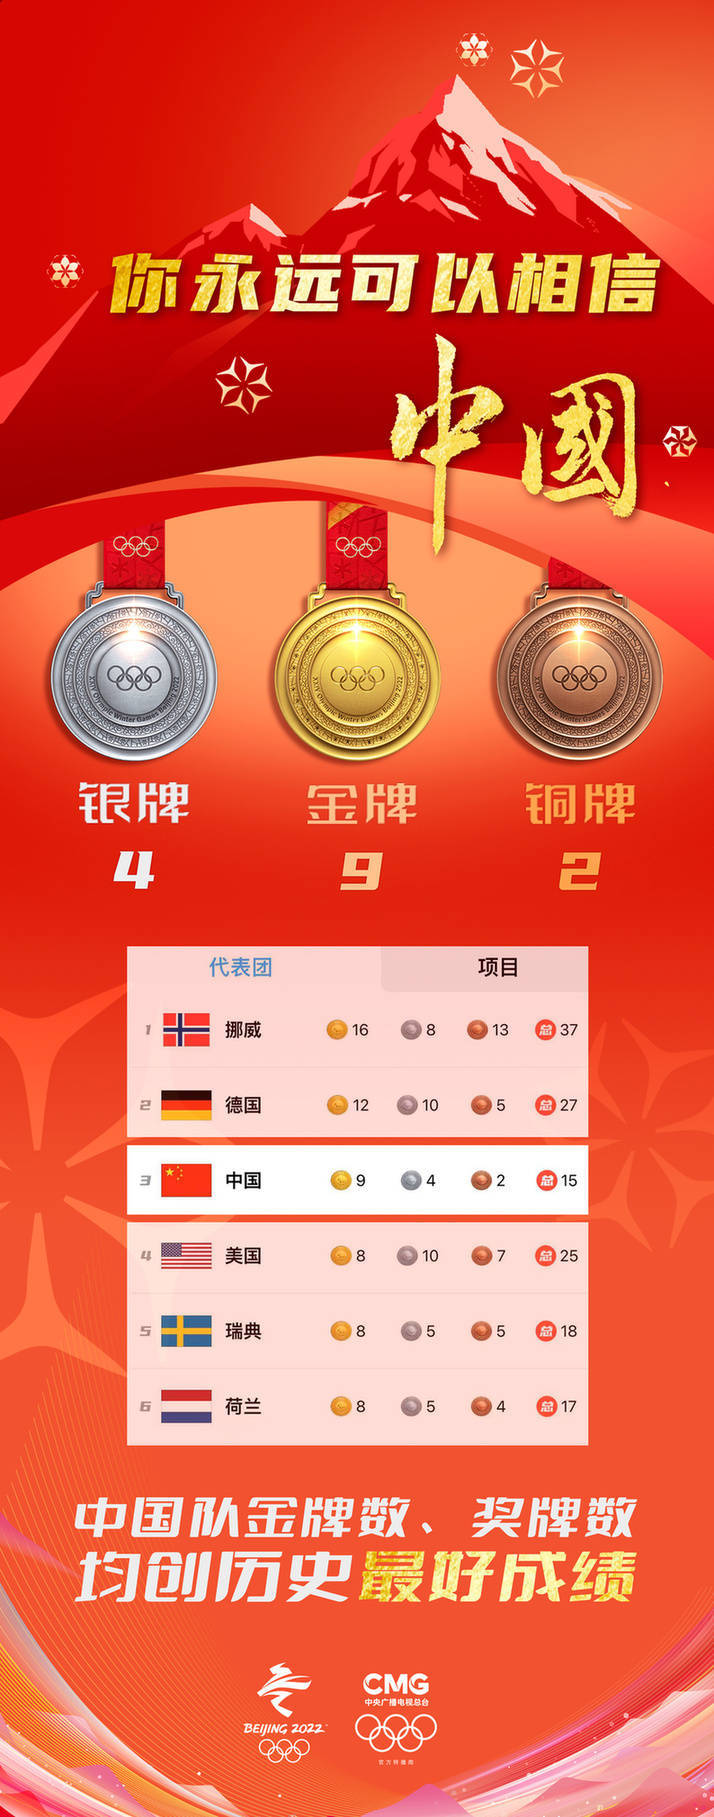 钢架|祝贺！中国队位列奖牌榜第三位 金牌数、奖牌数均创历史最好成绩